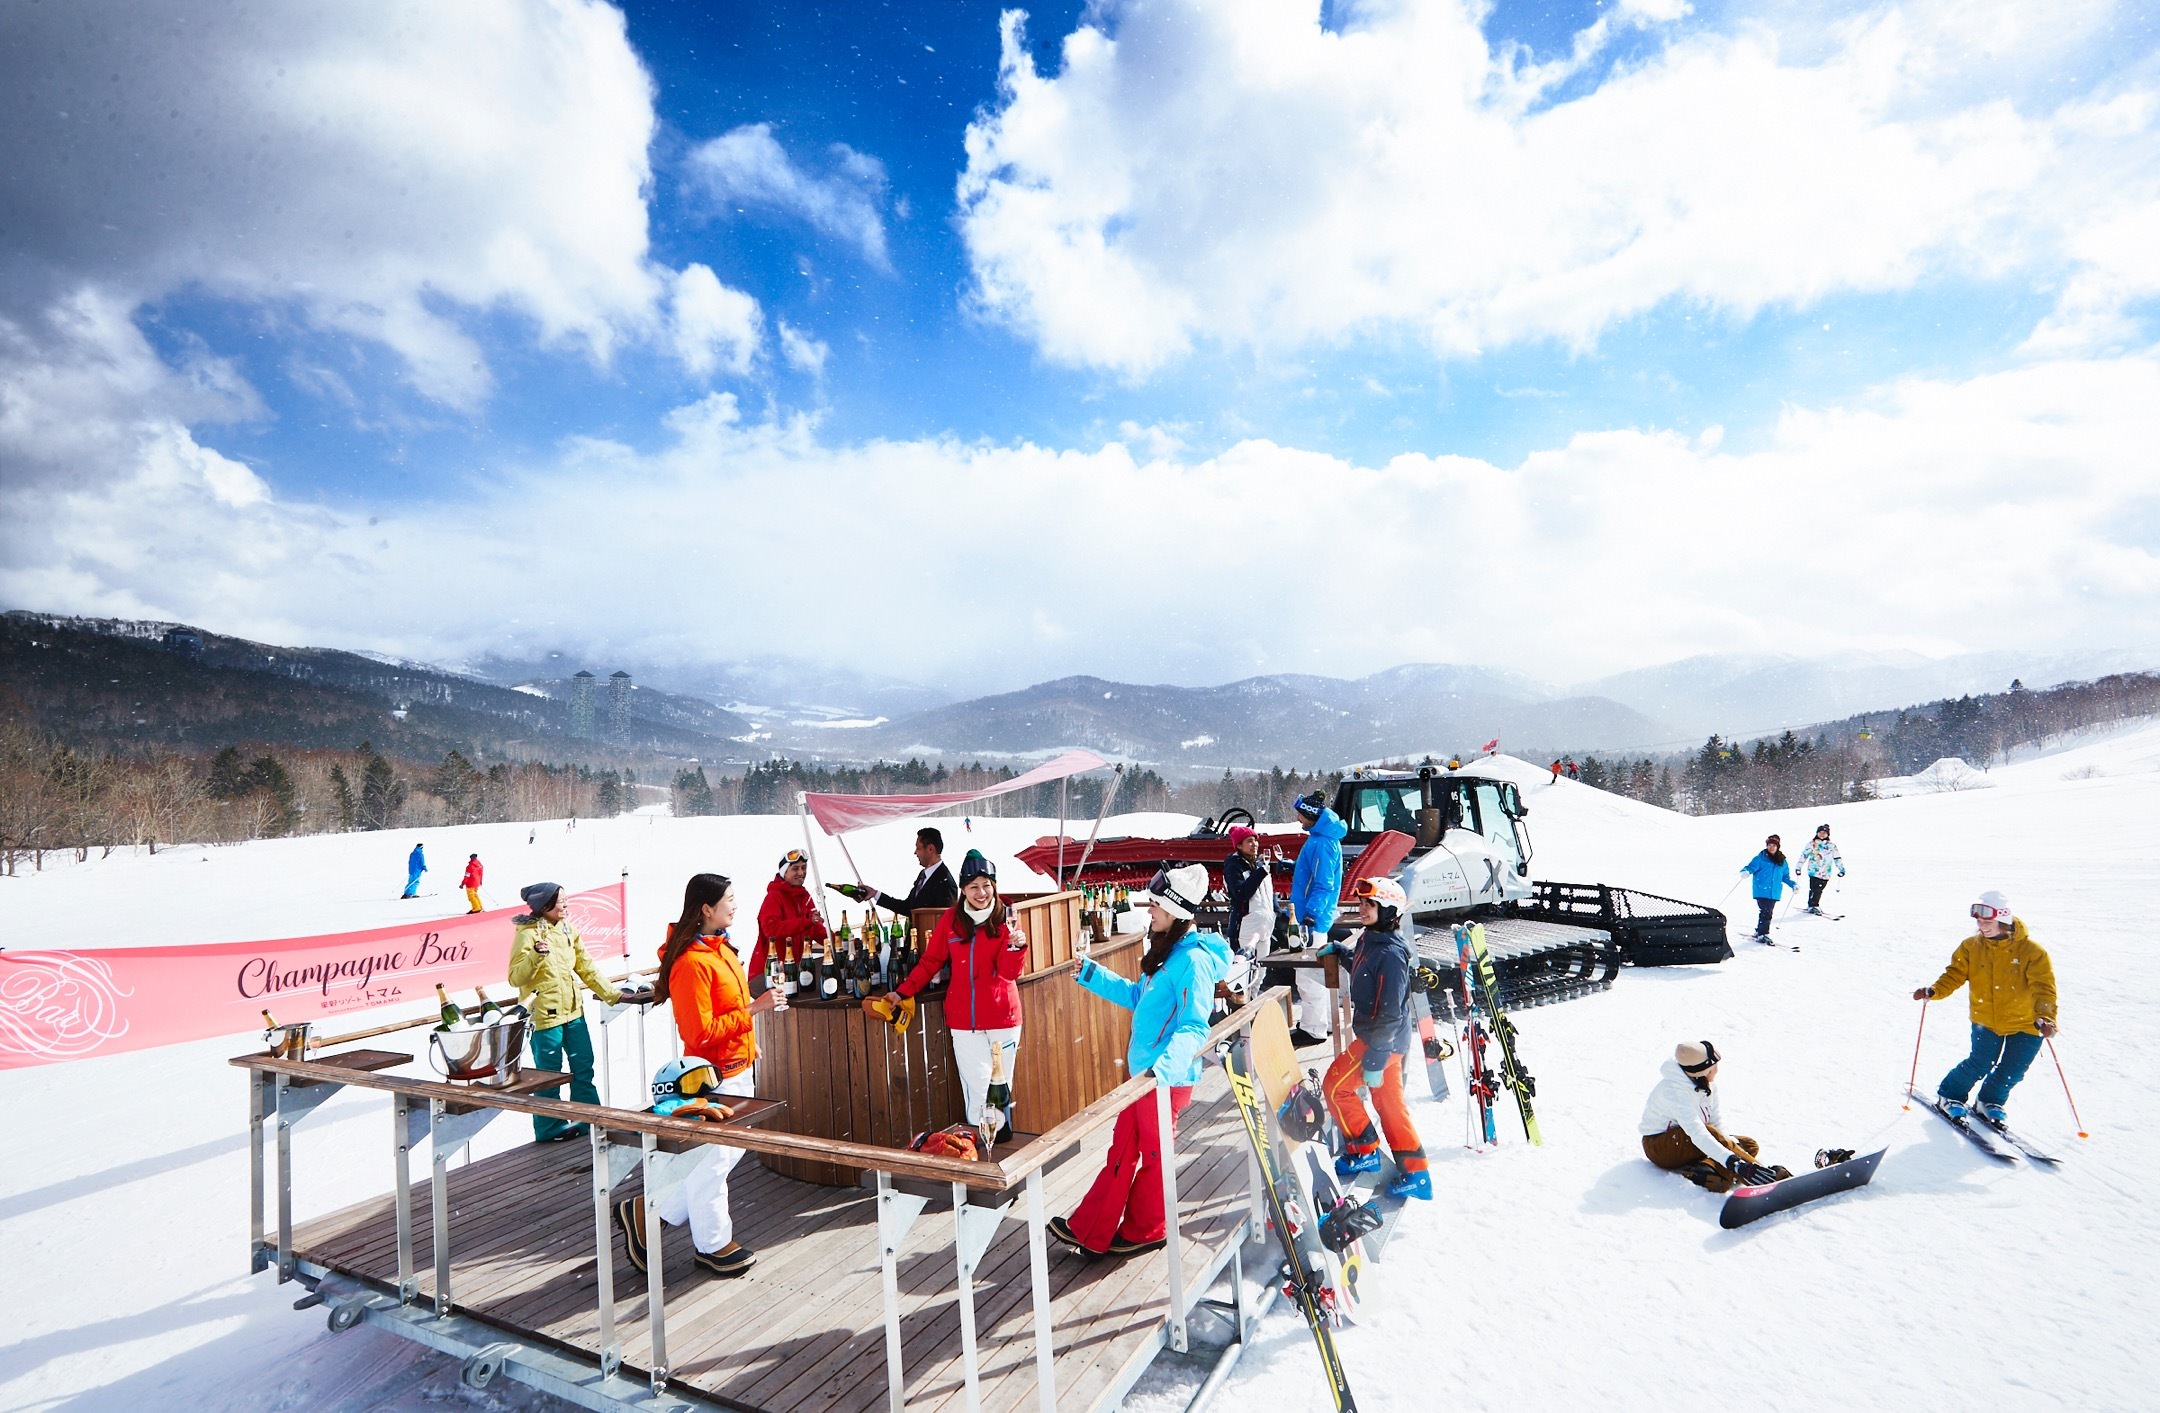 星野リゾート　トマム スキー場（北海道勇払郡占冠村）
冬山の絶景を眺めながら贅沢に過ごす、晴れの日限定イベント
「絶景シャンパンバー」でシャンパン20種類の提供を開始
実施期間：2019年3月1日〜31日のうち晴れの日限定